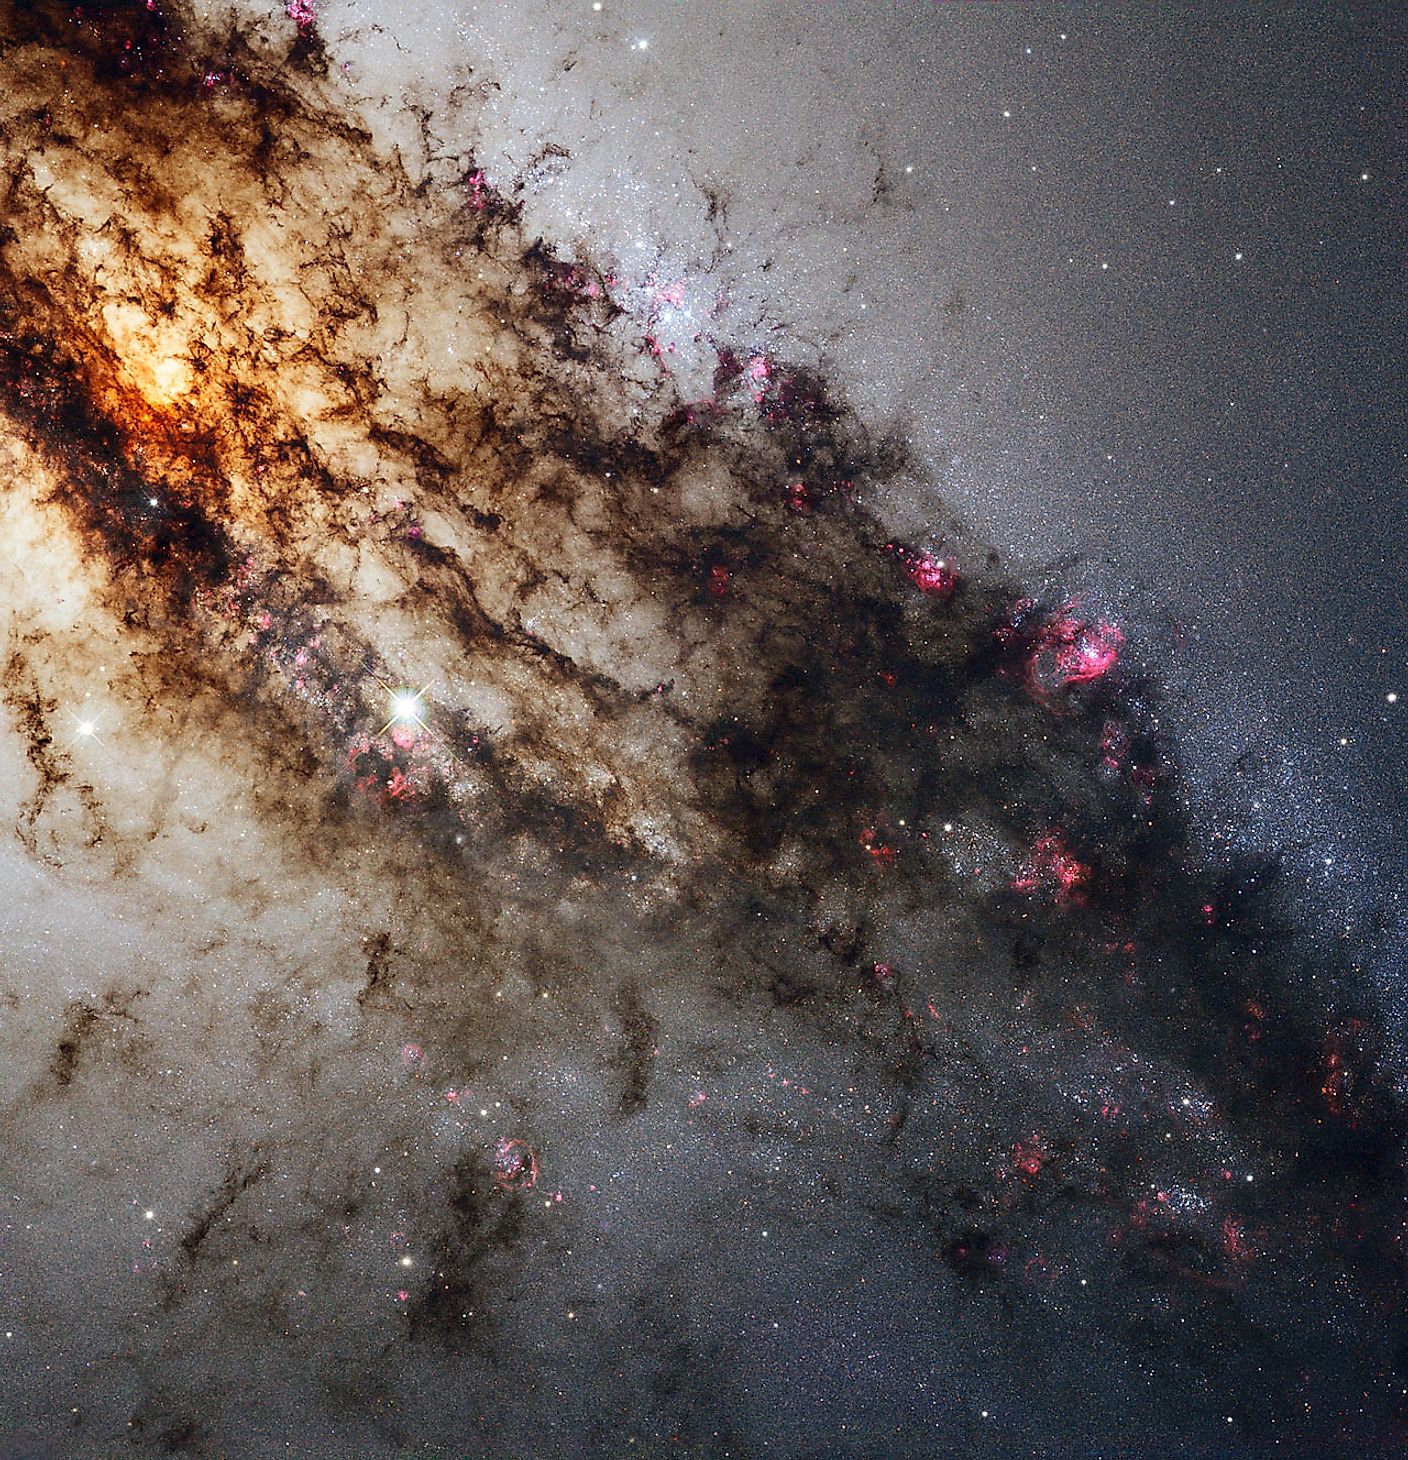 Hubble image of an active galaxy, Image credit: NASA/ESA